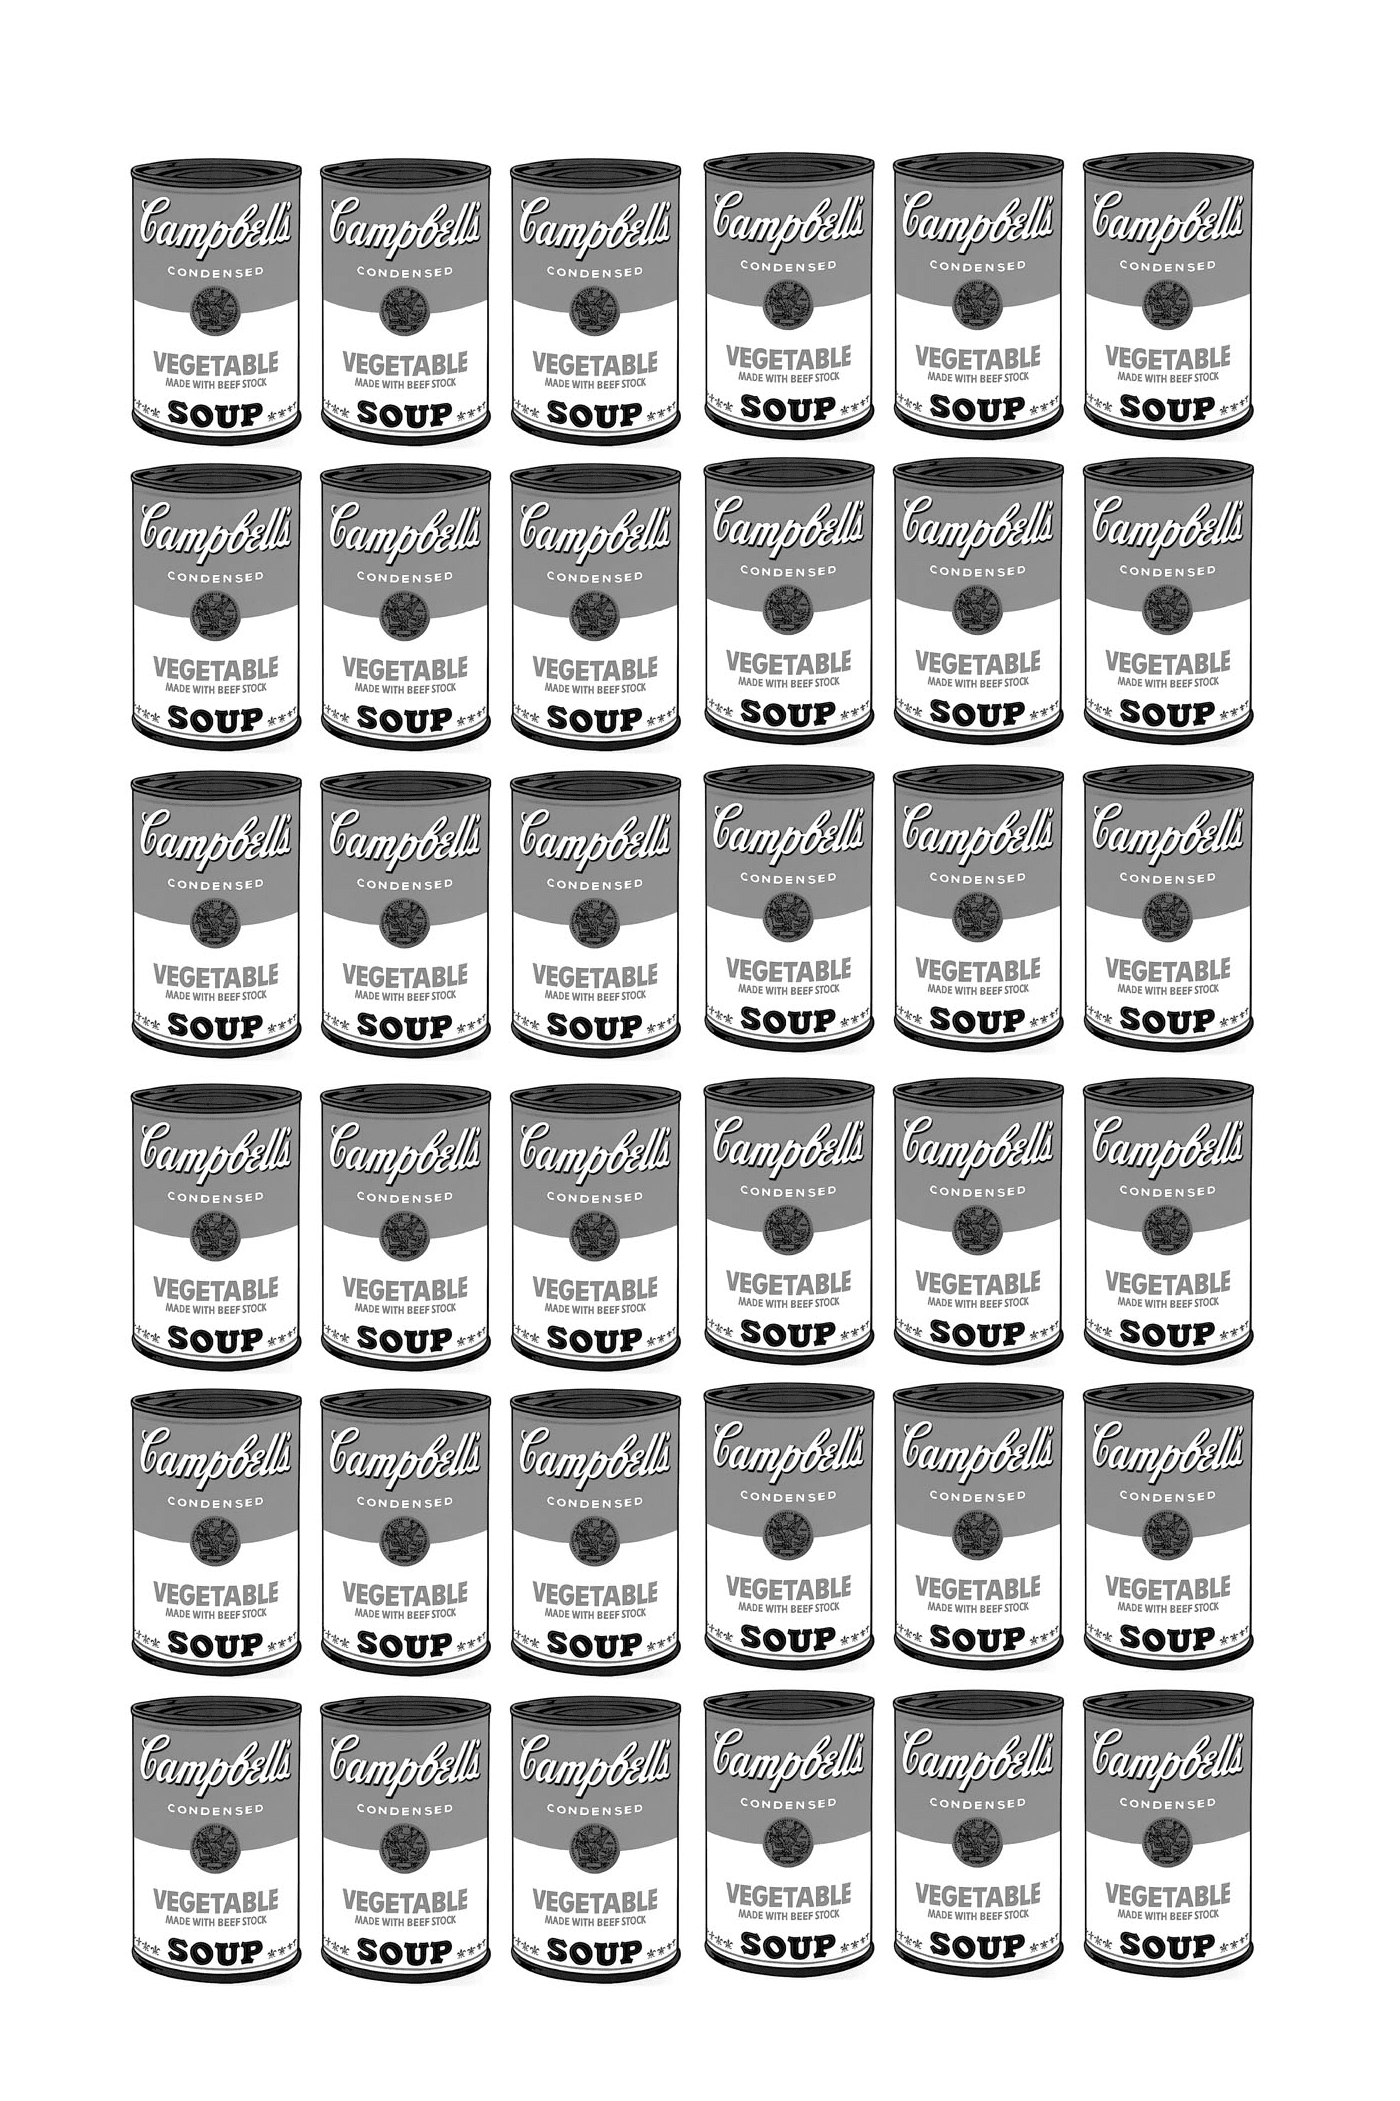  uma série de caixas de sopa Campbell inteiramente preto e branco de acordo com Warhol 